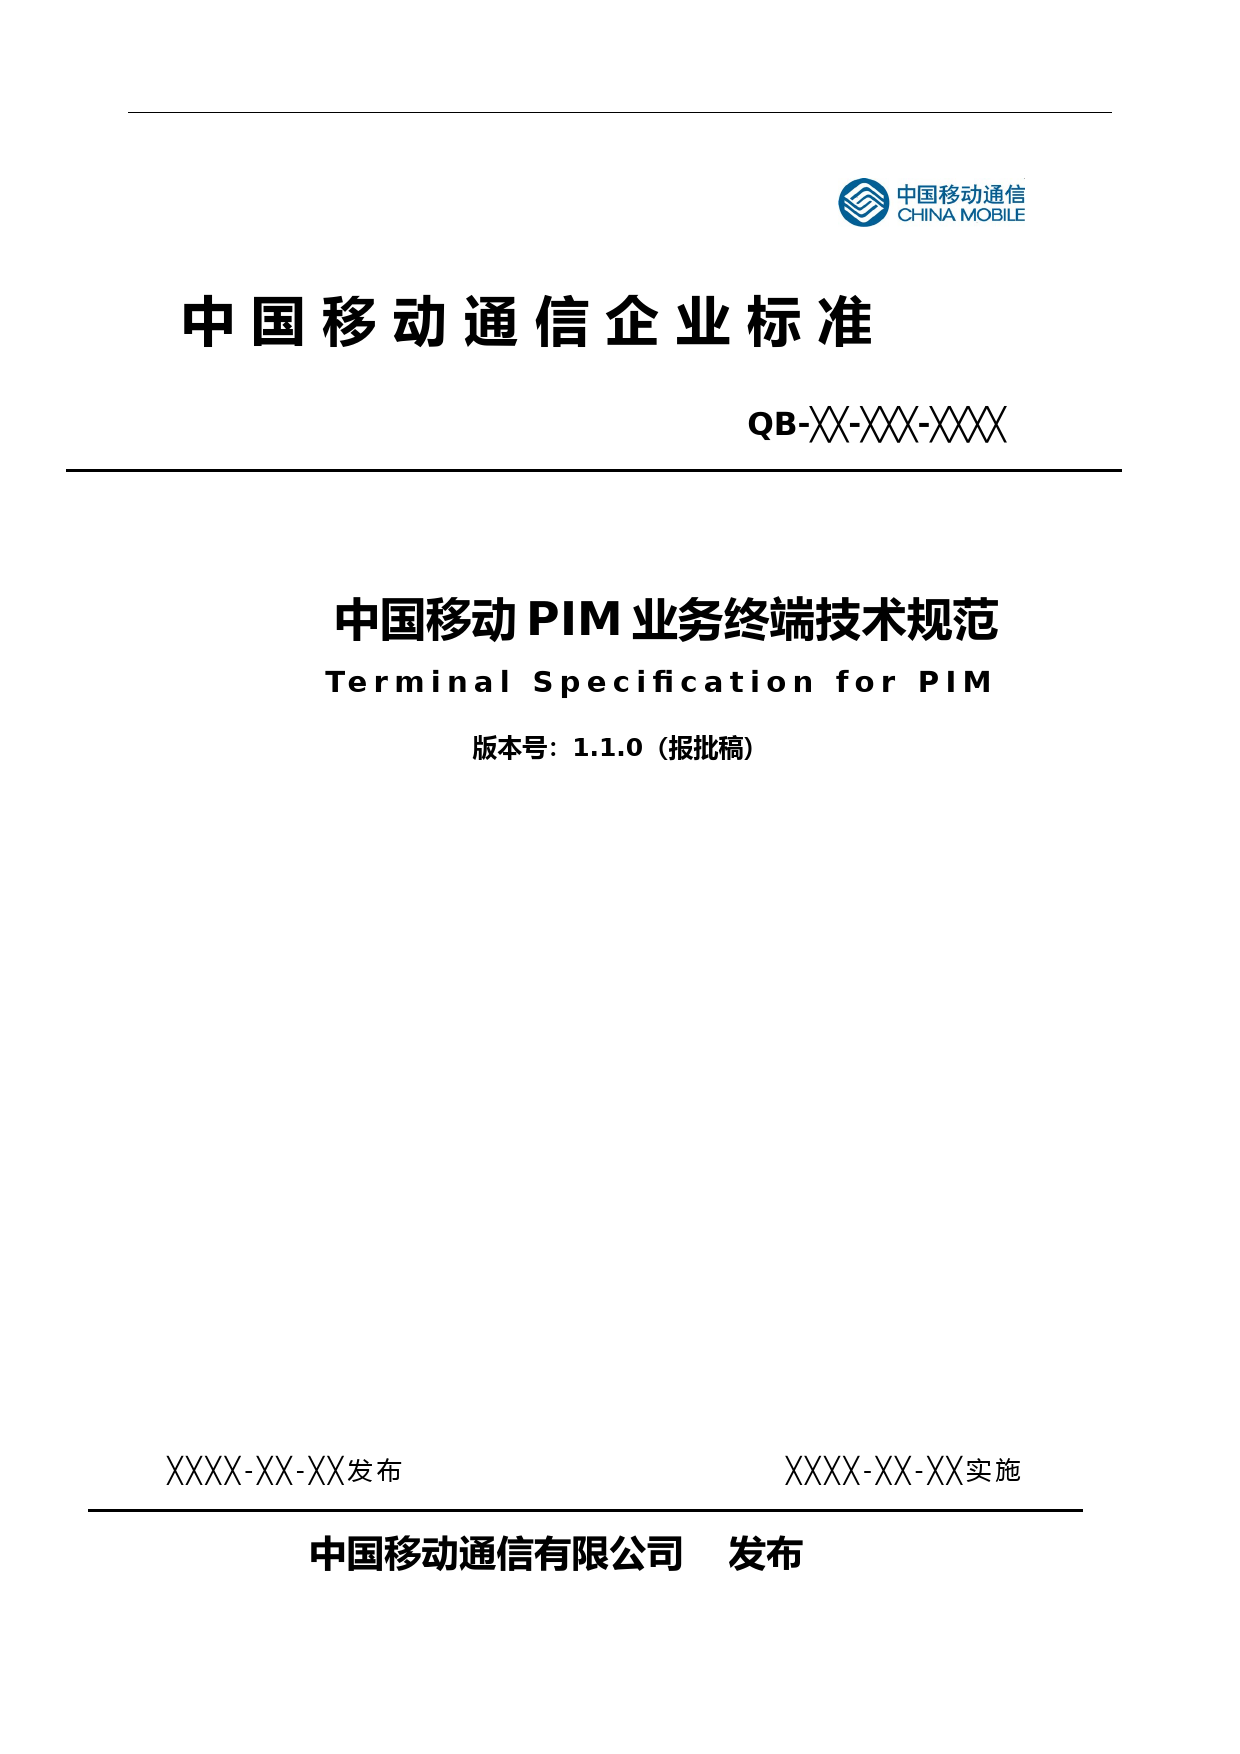 (技术规范标准)中国移动PIM业务终端技术规范